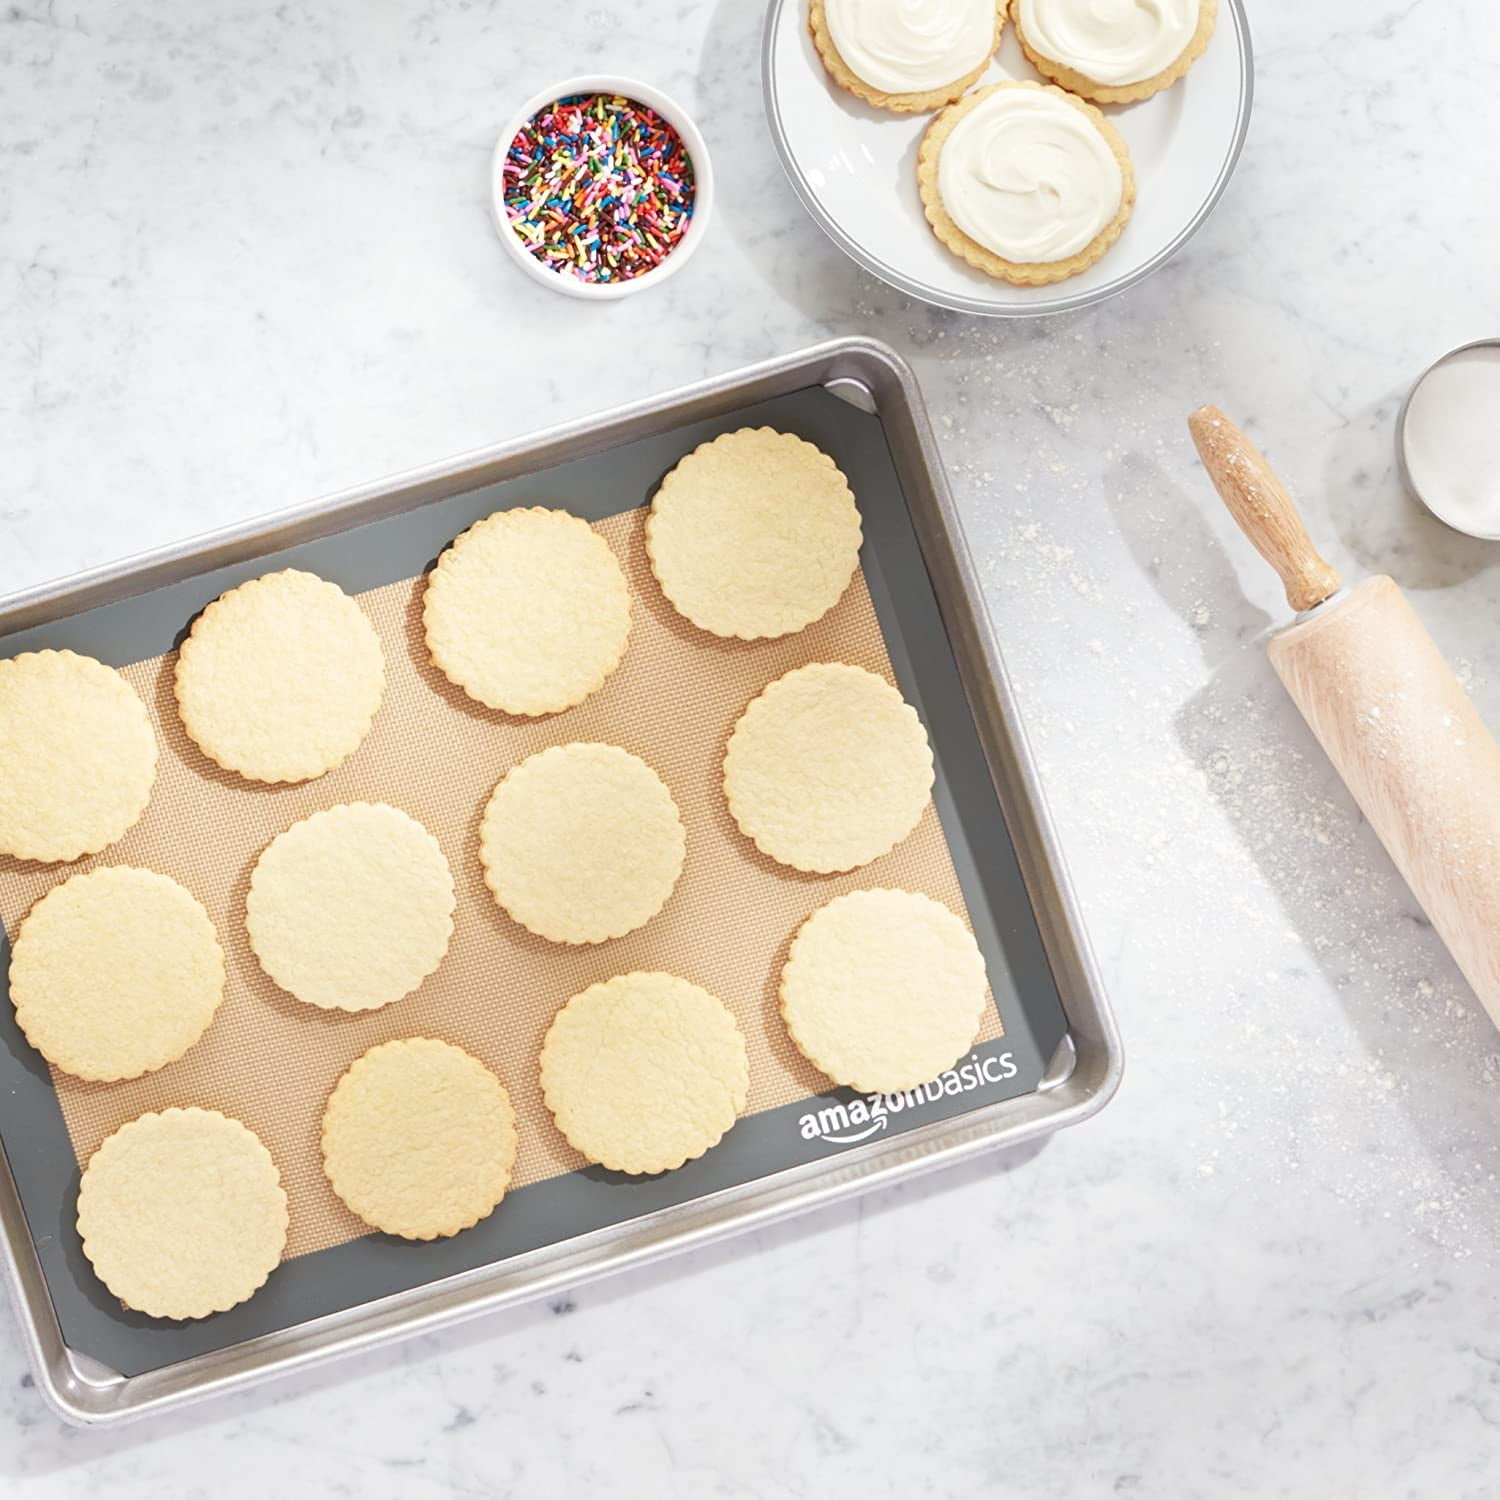 USA Pan Nonstick Silicone Half Sheet Baking Mat, Set of 2 – PastryBase